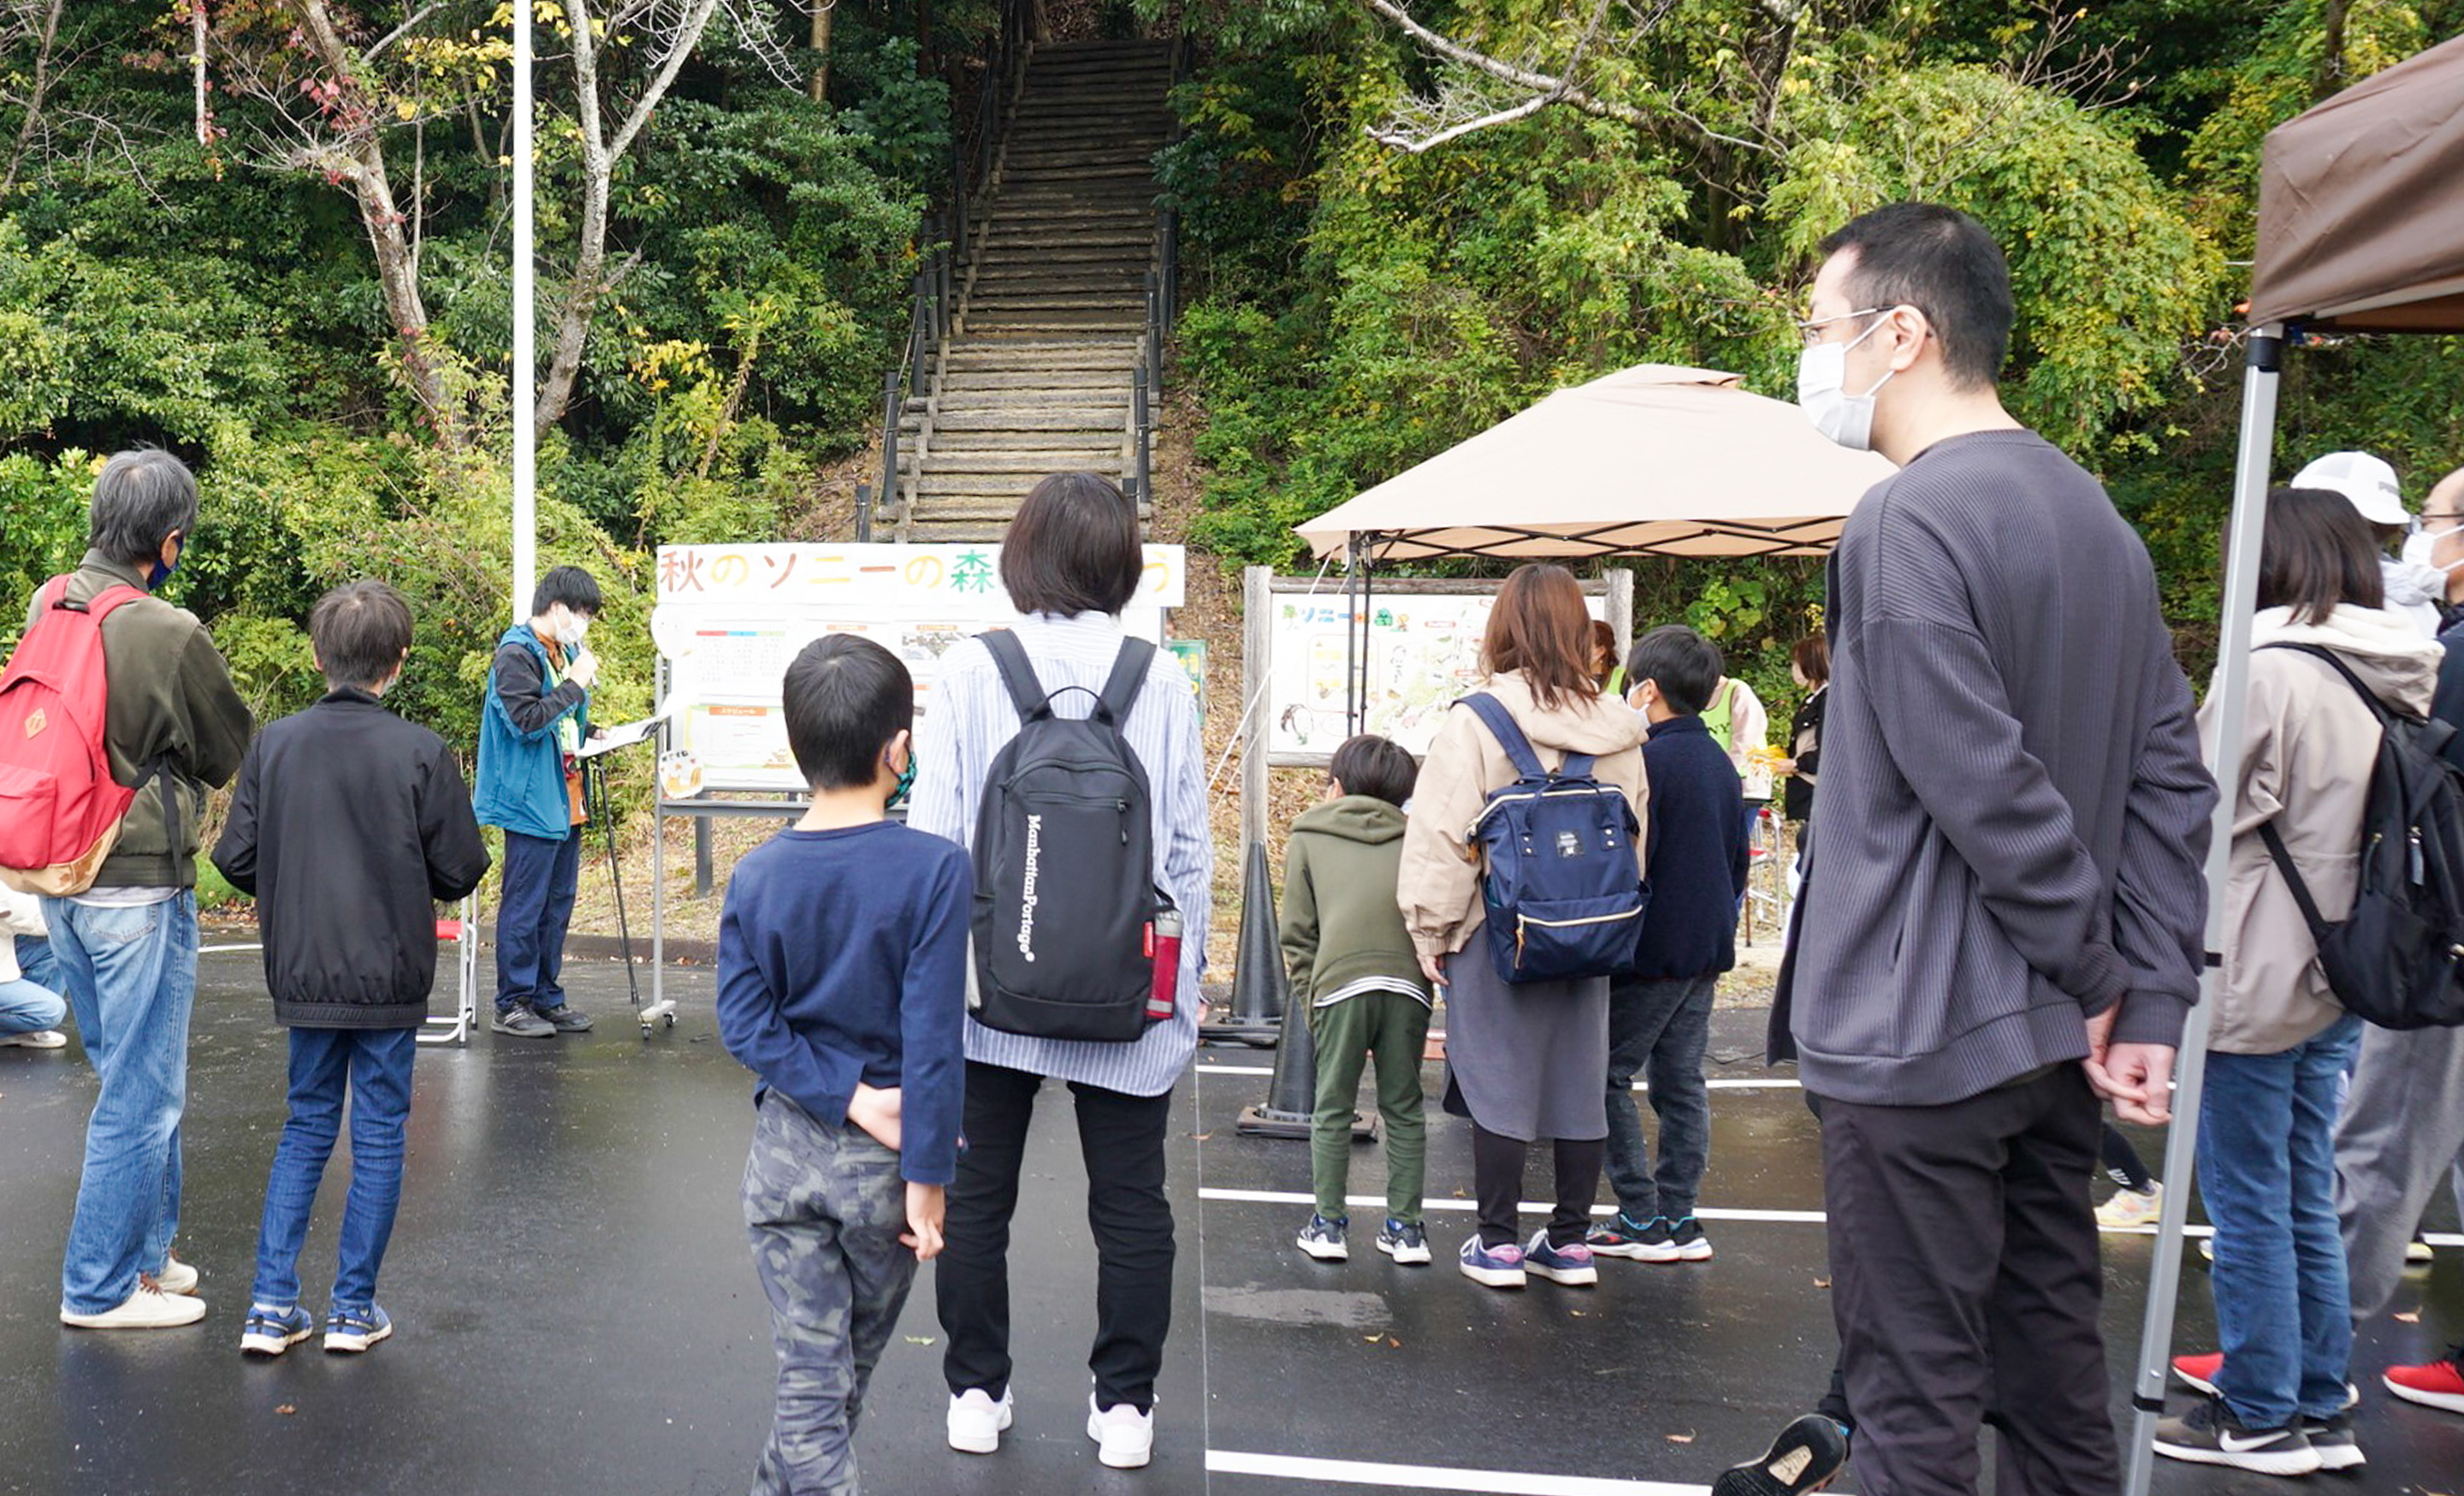 丘の公園の入り口に集まるたくさんの親子連れ。公園の入口は豊かな緑に囲まれ、木の階段が見える